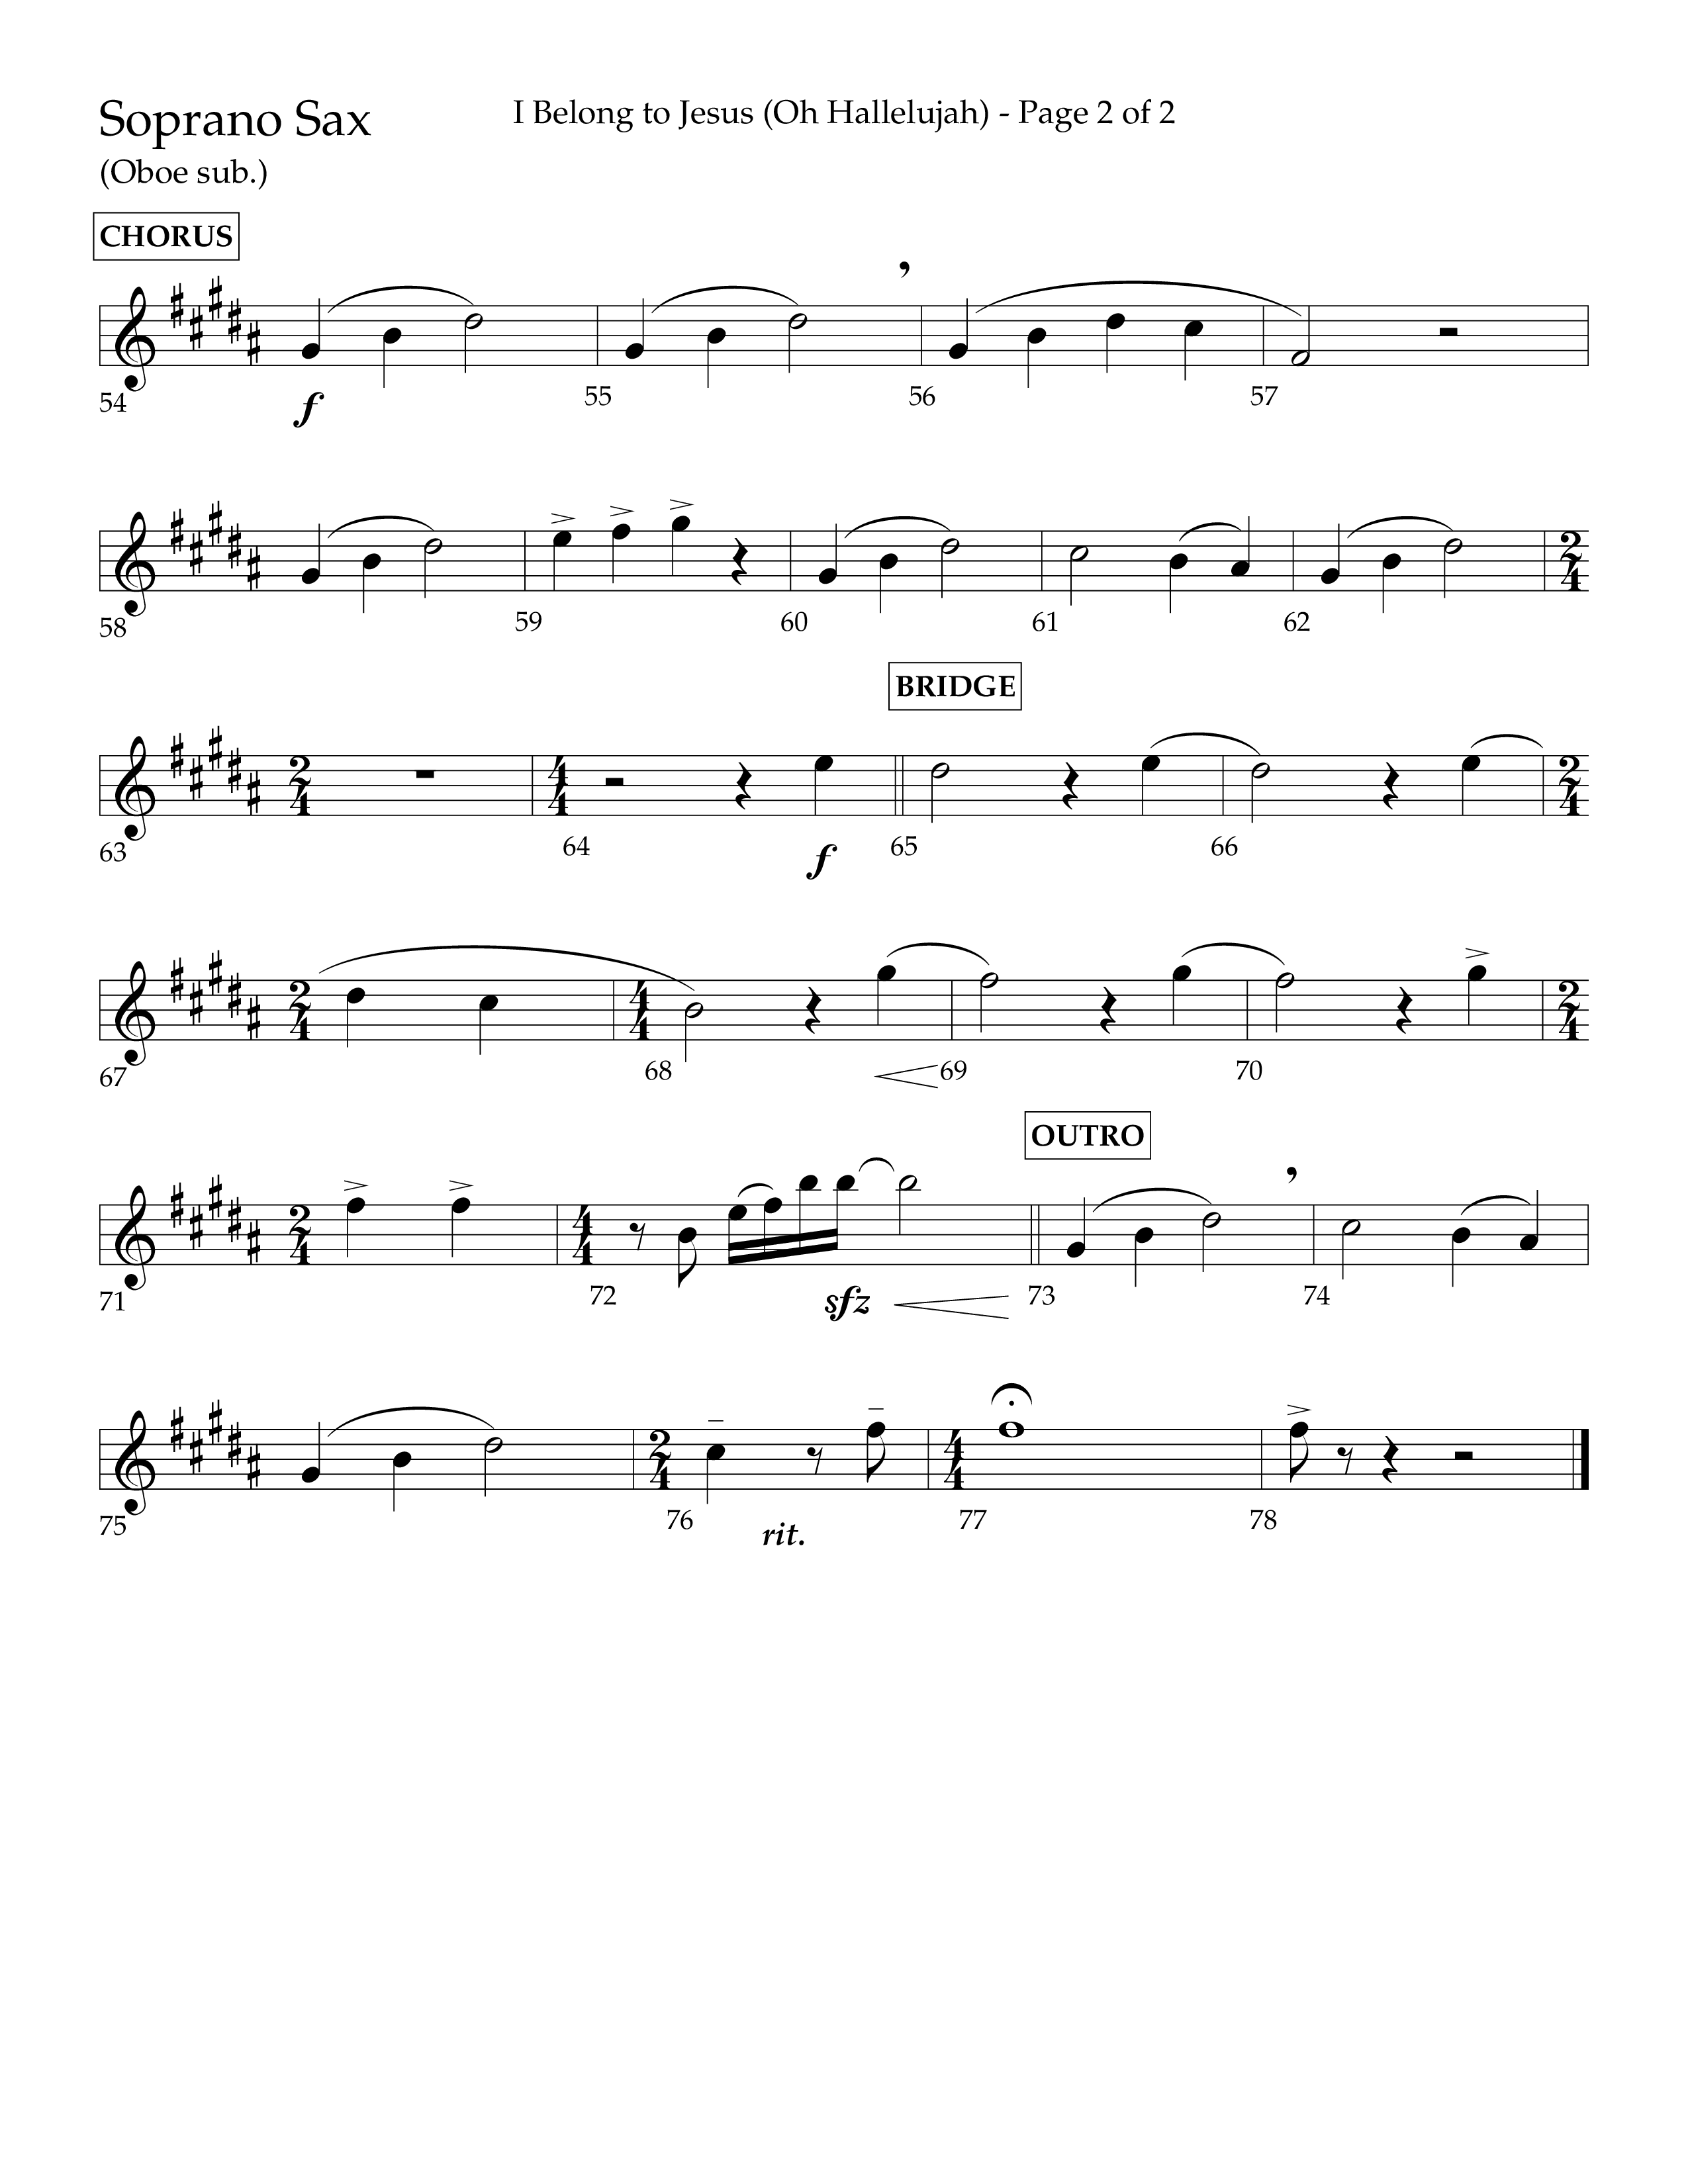 I Belong To Jesus (Hallelujah) (Choral Anthem SATB) Soprano Sax (Lifeway Choral / Arr. Luke Gambill / Orch. Josh Stewart)